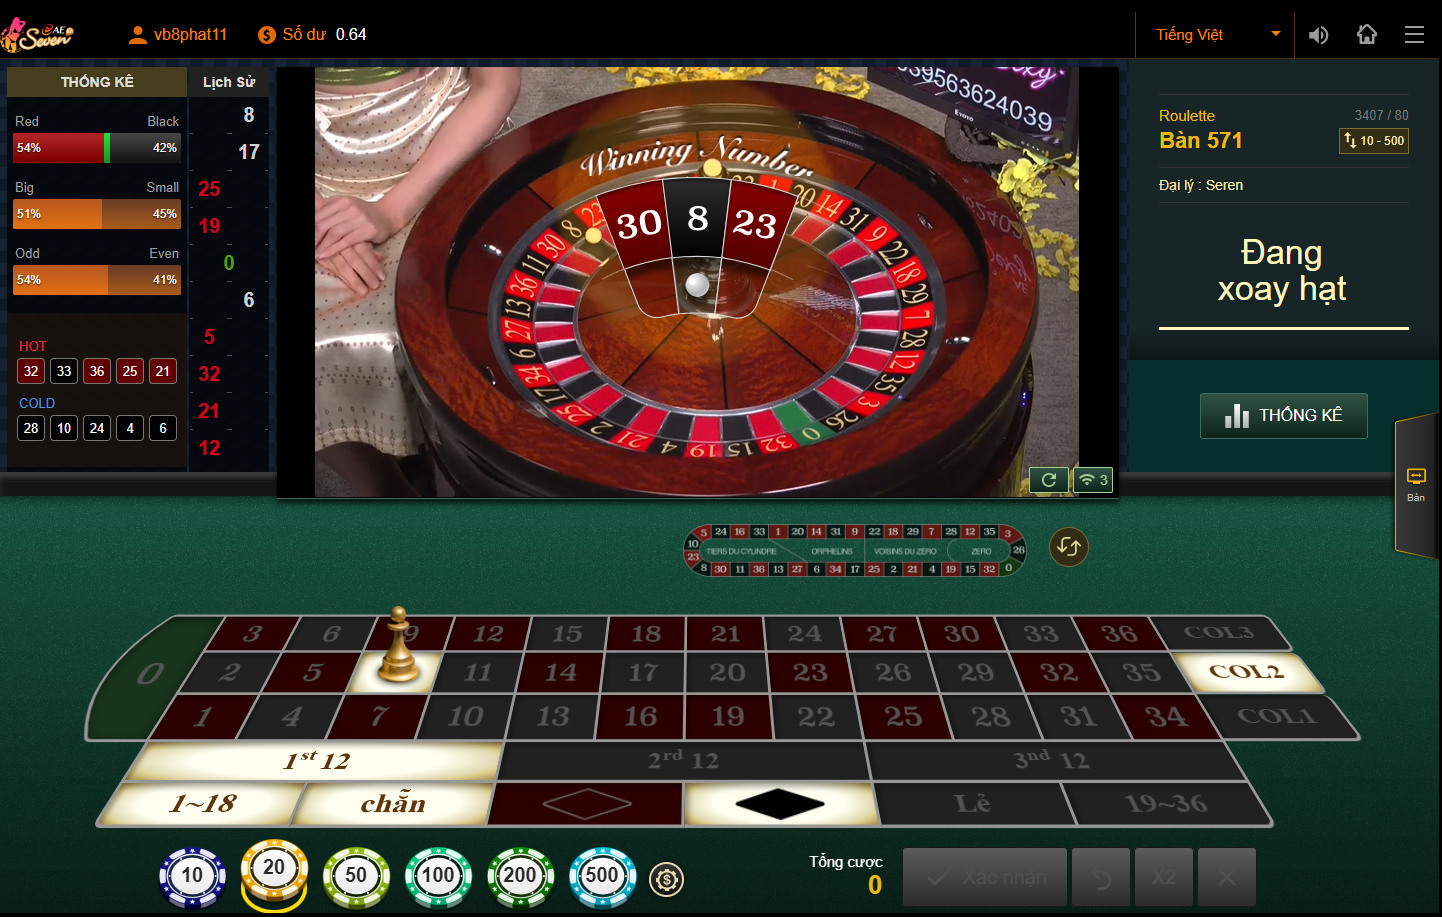 Cách chơi roulette tại New88 đơn giản, dễ dàng